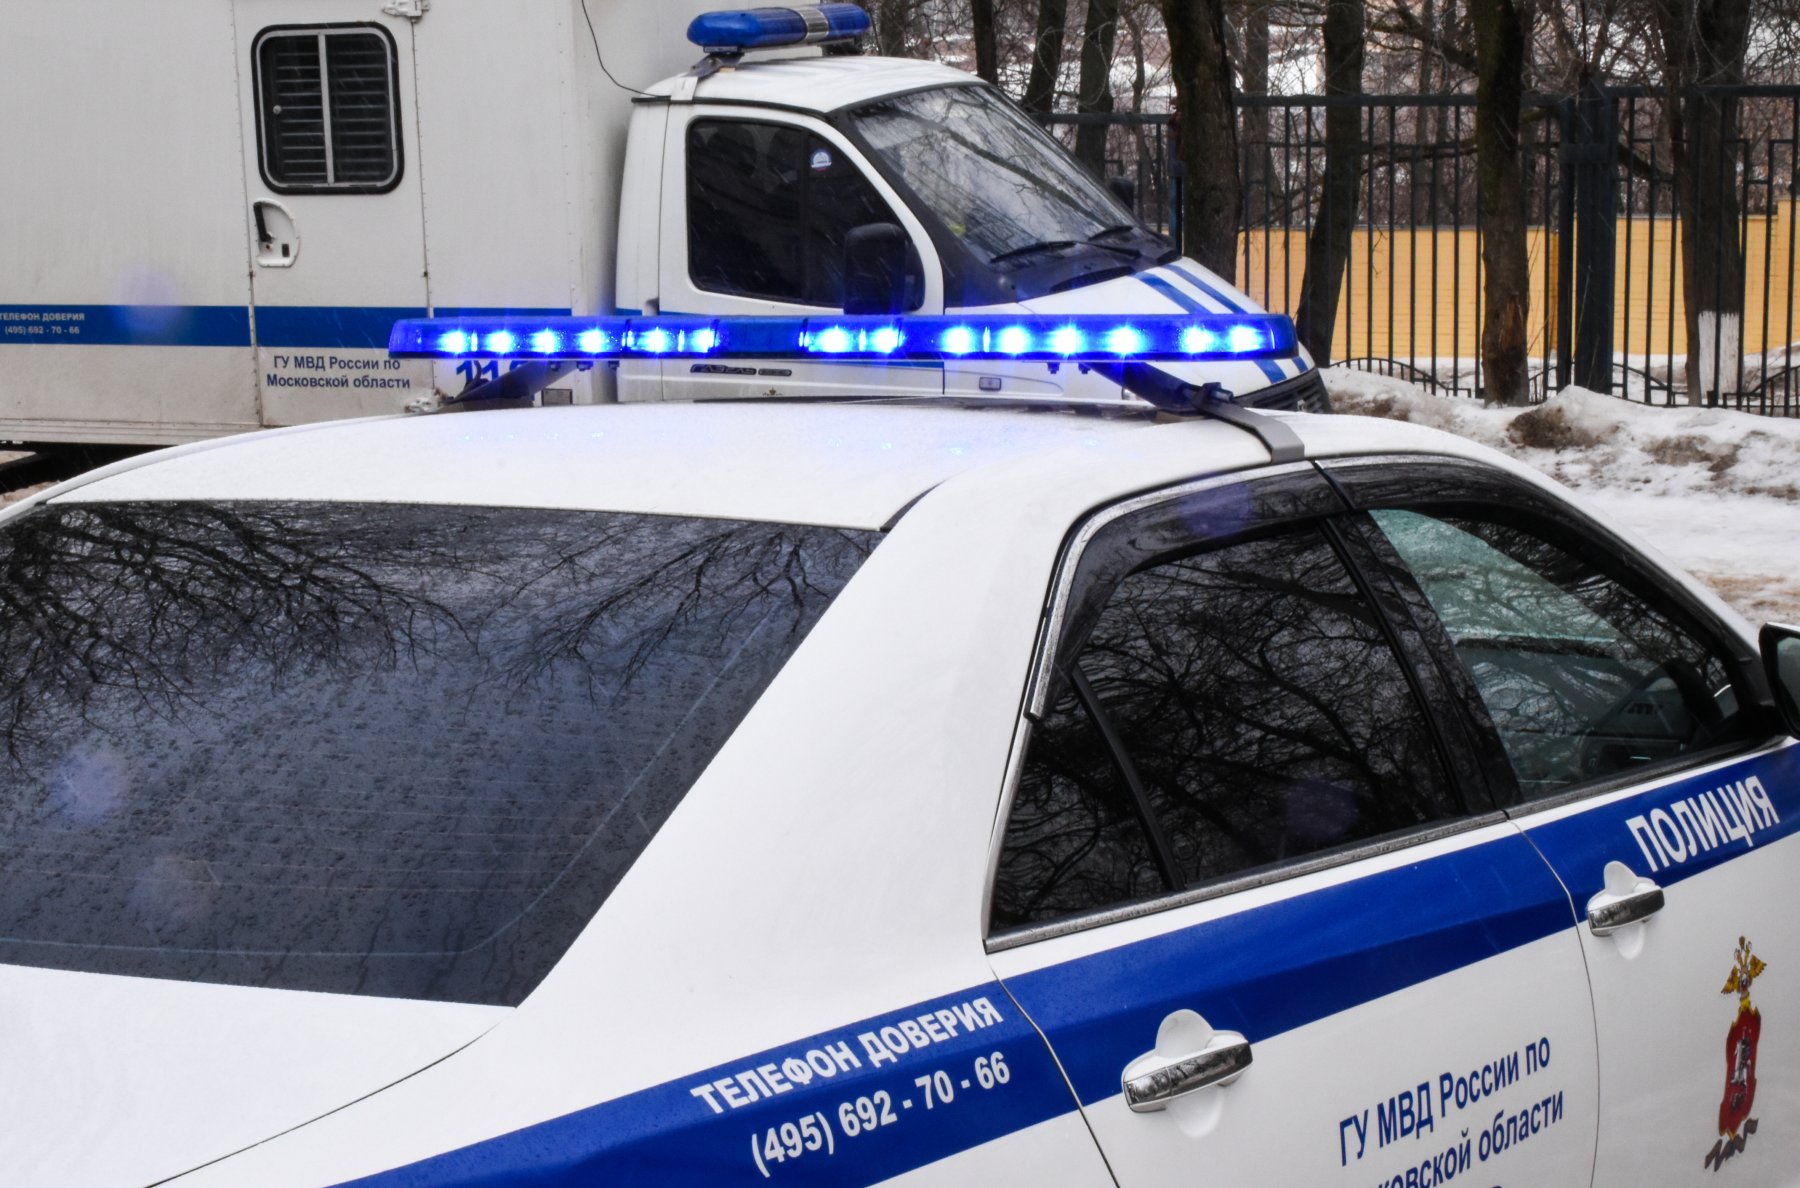 В Подмосковье задержан 31-летний мужчина с 800 граммами амфетамина